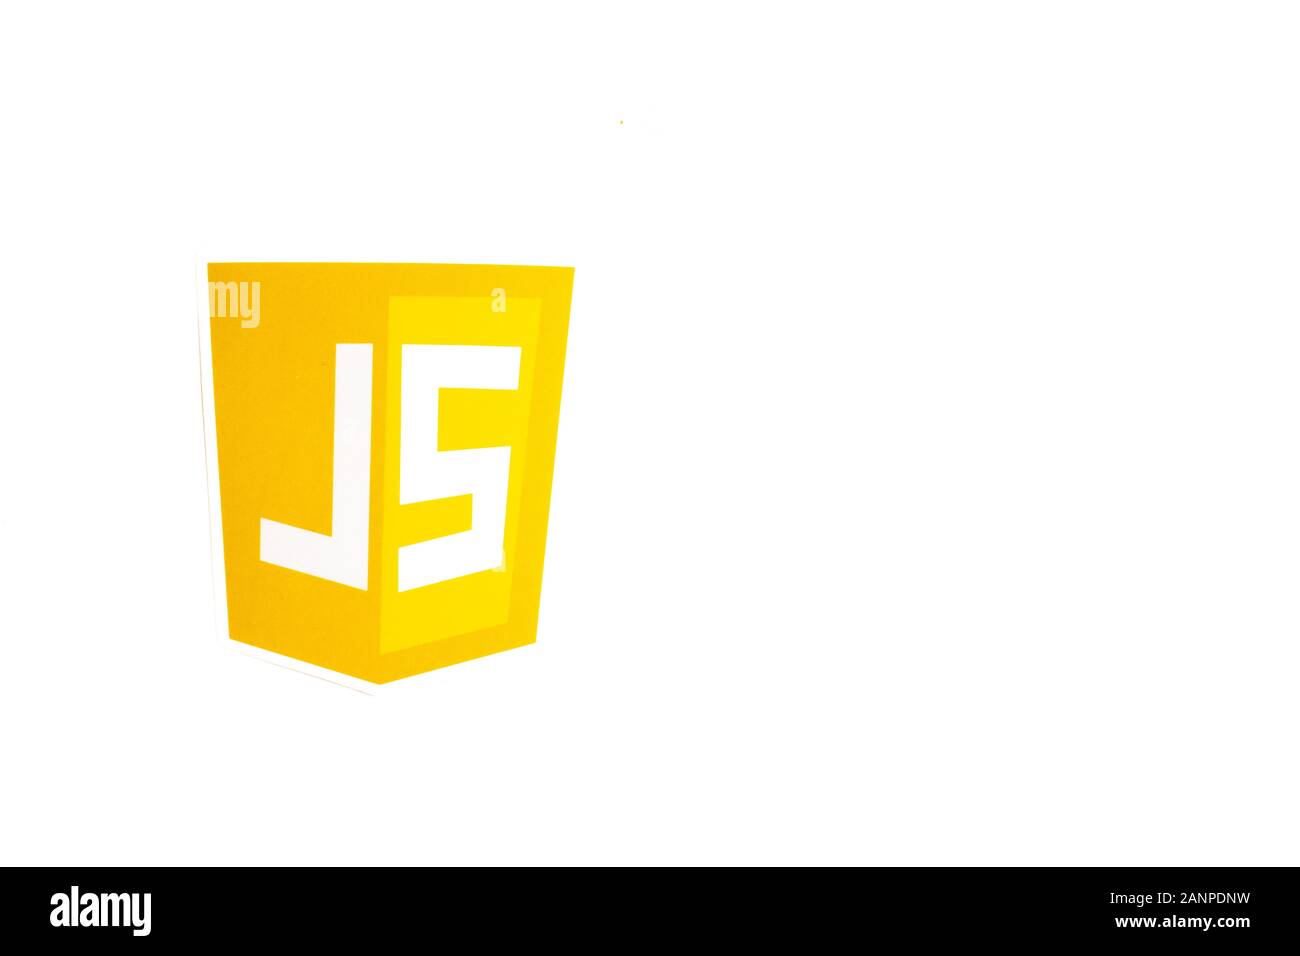 Los Angeles, Californie, États-Unis - 17 janvier 2020: JS Java Script logo avec espace de copie, éditorial illustratif Banque D'Images